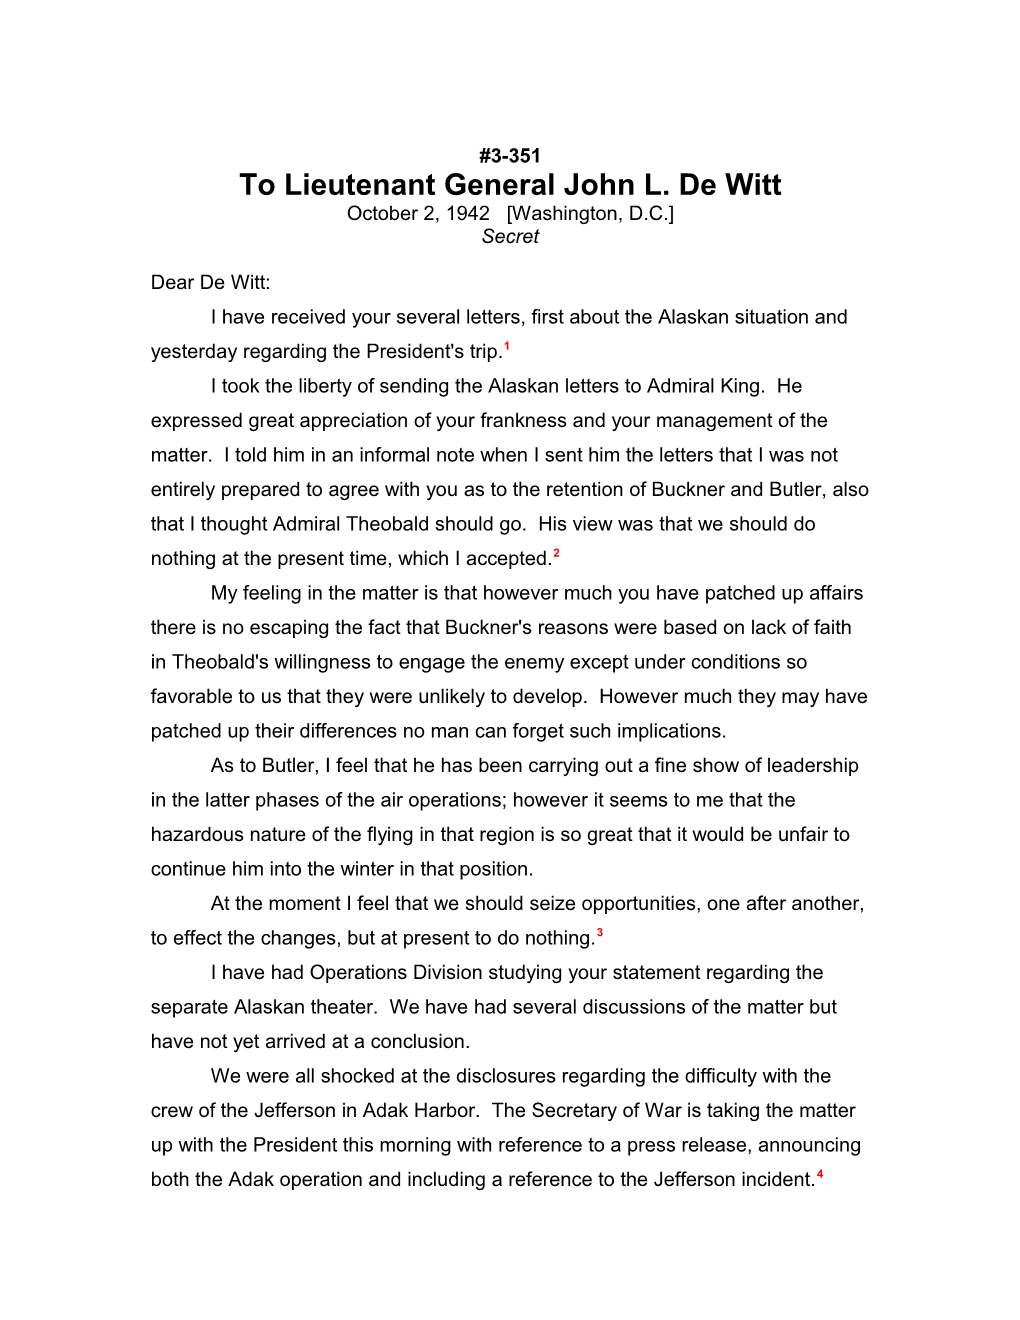 To Lieutenant General John L. De Witt